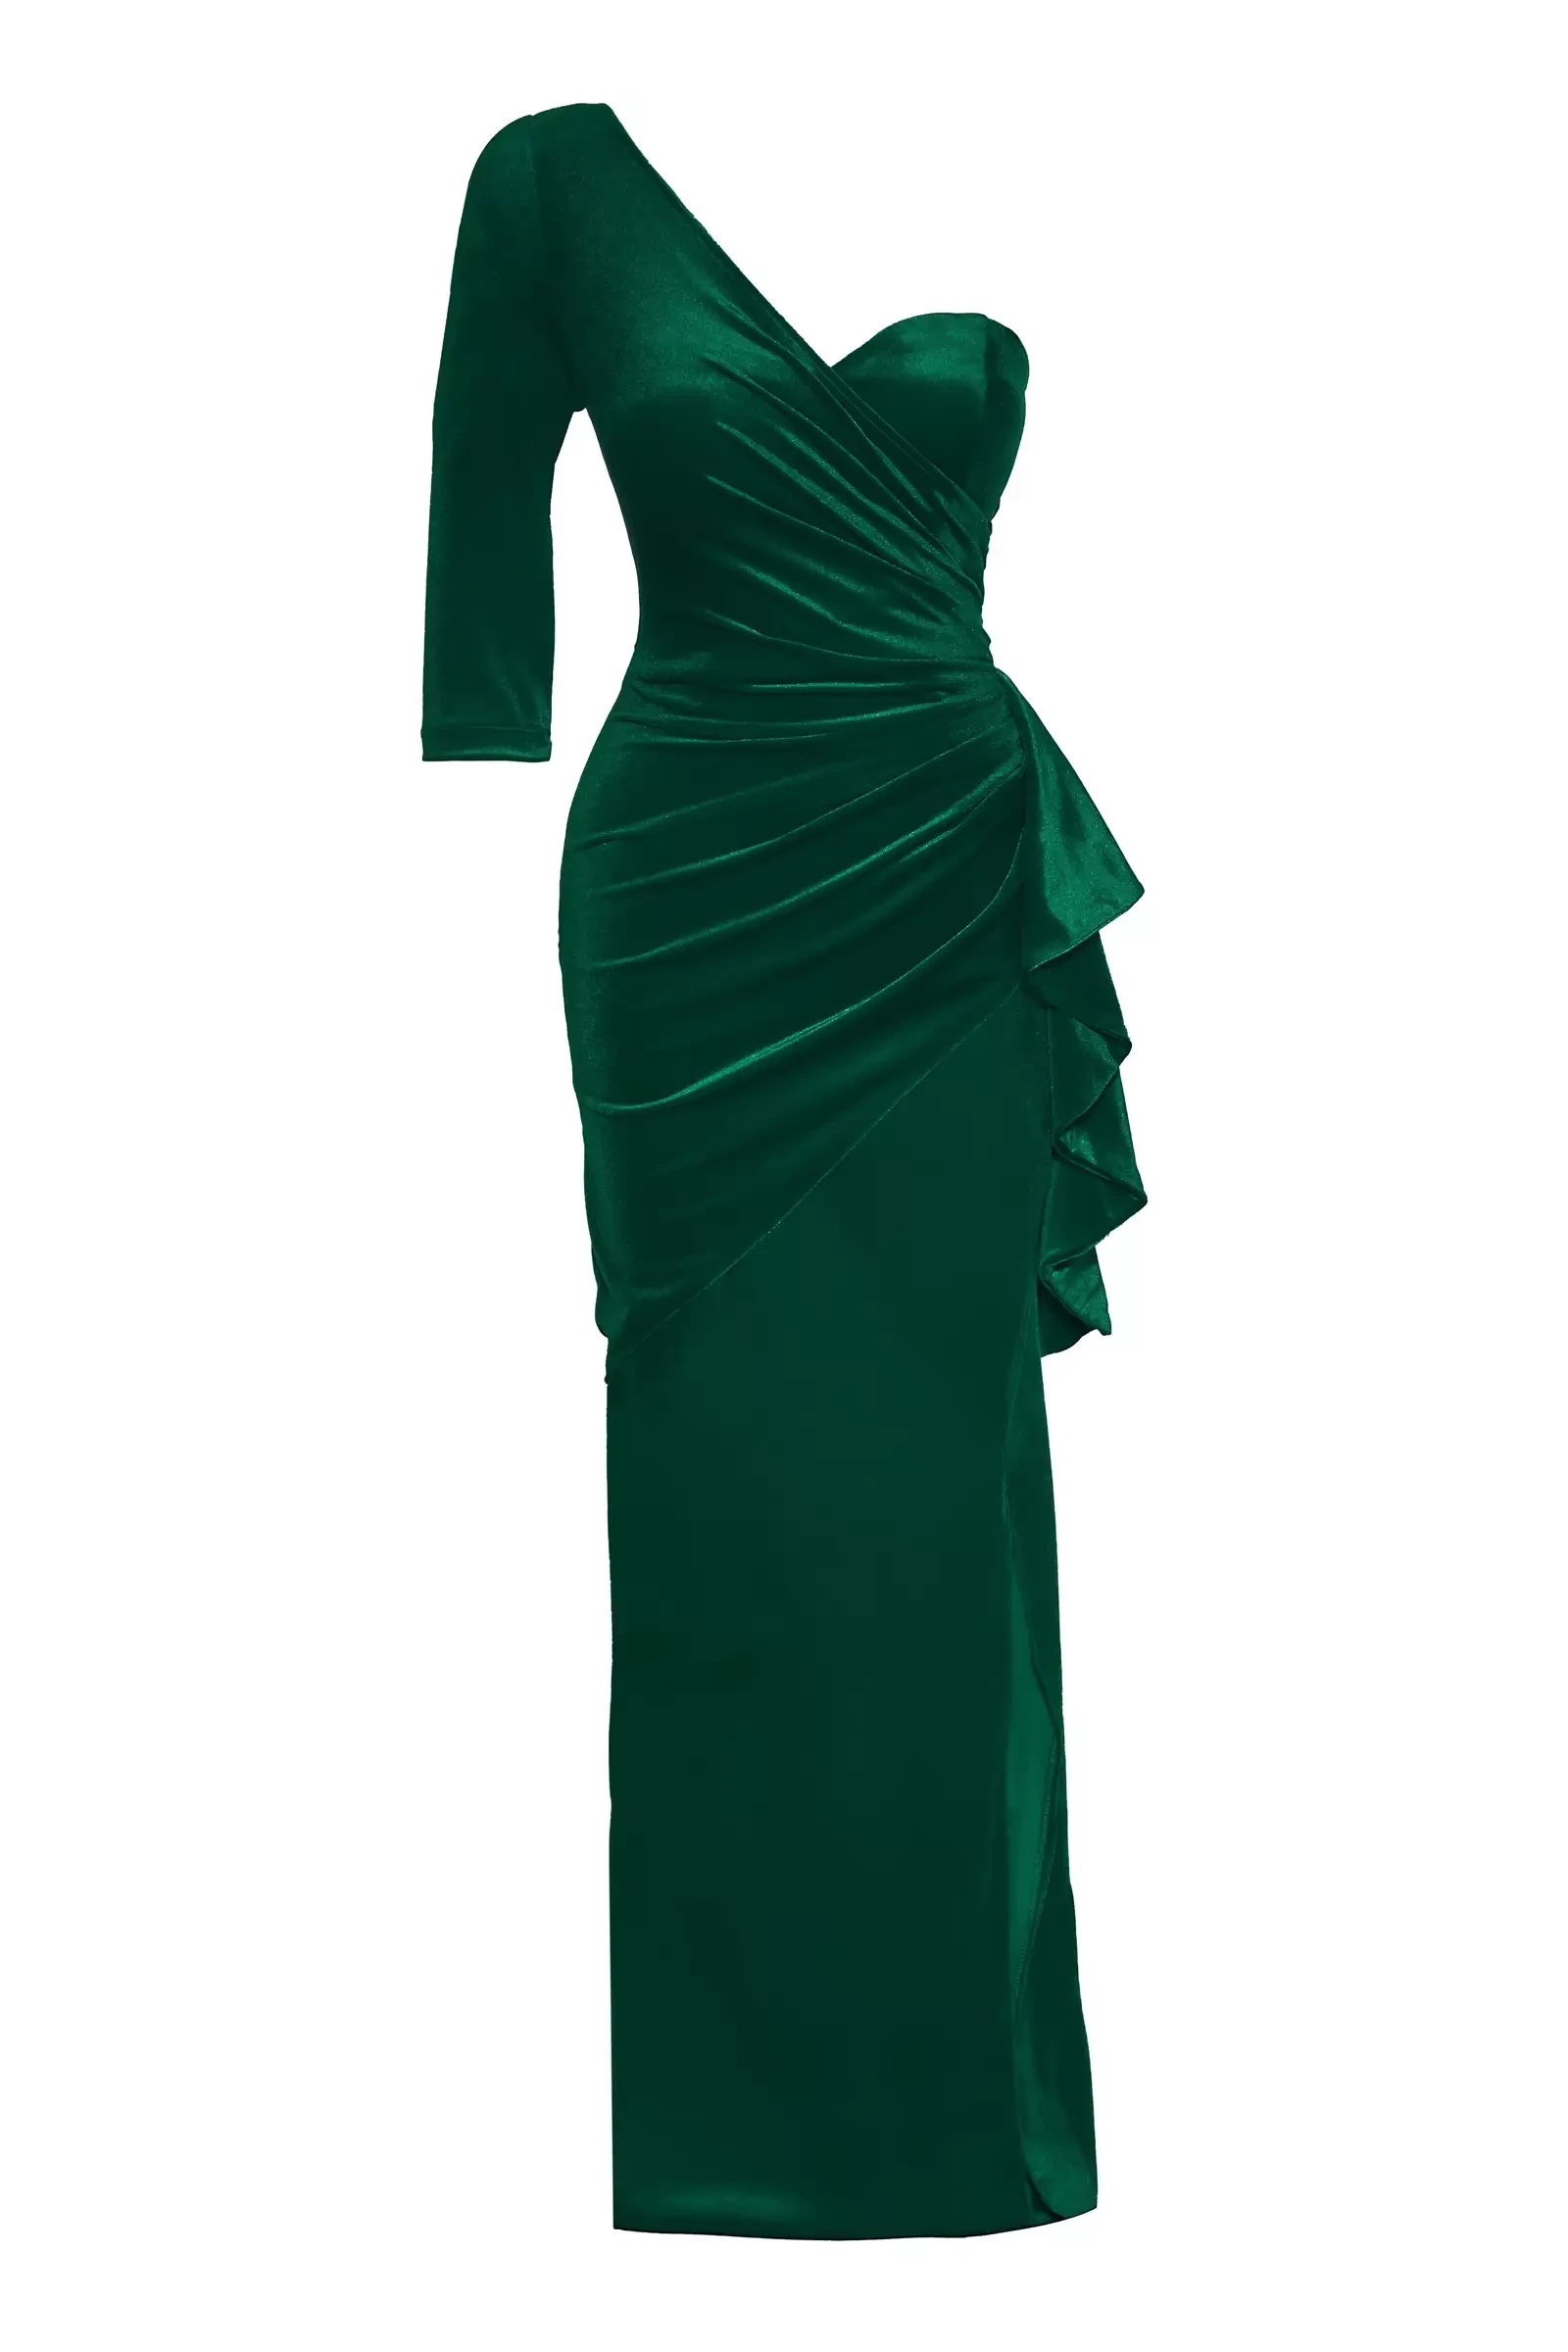 Green velvet one arm long dress